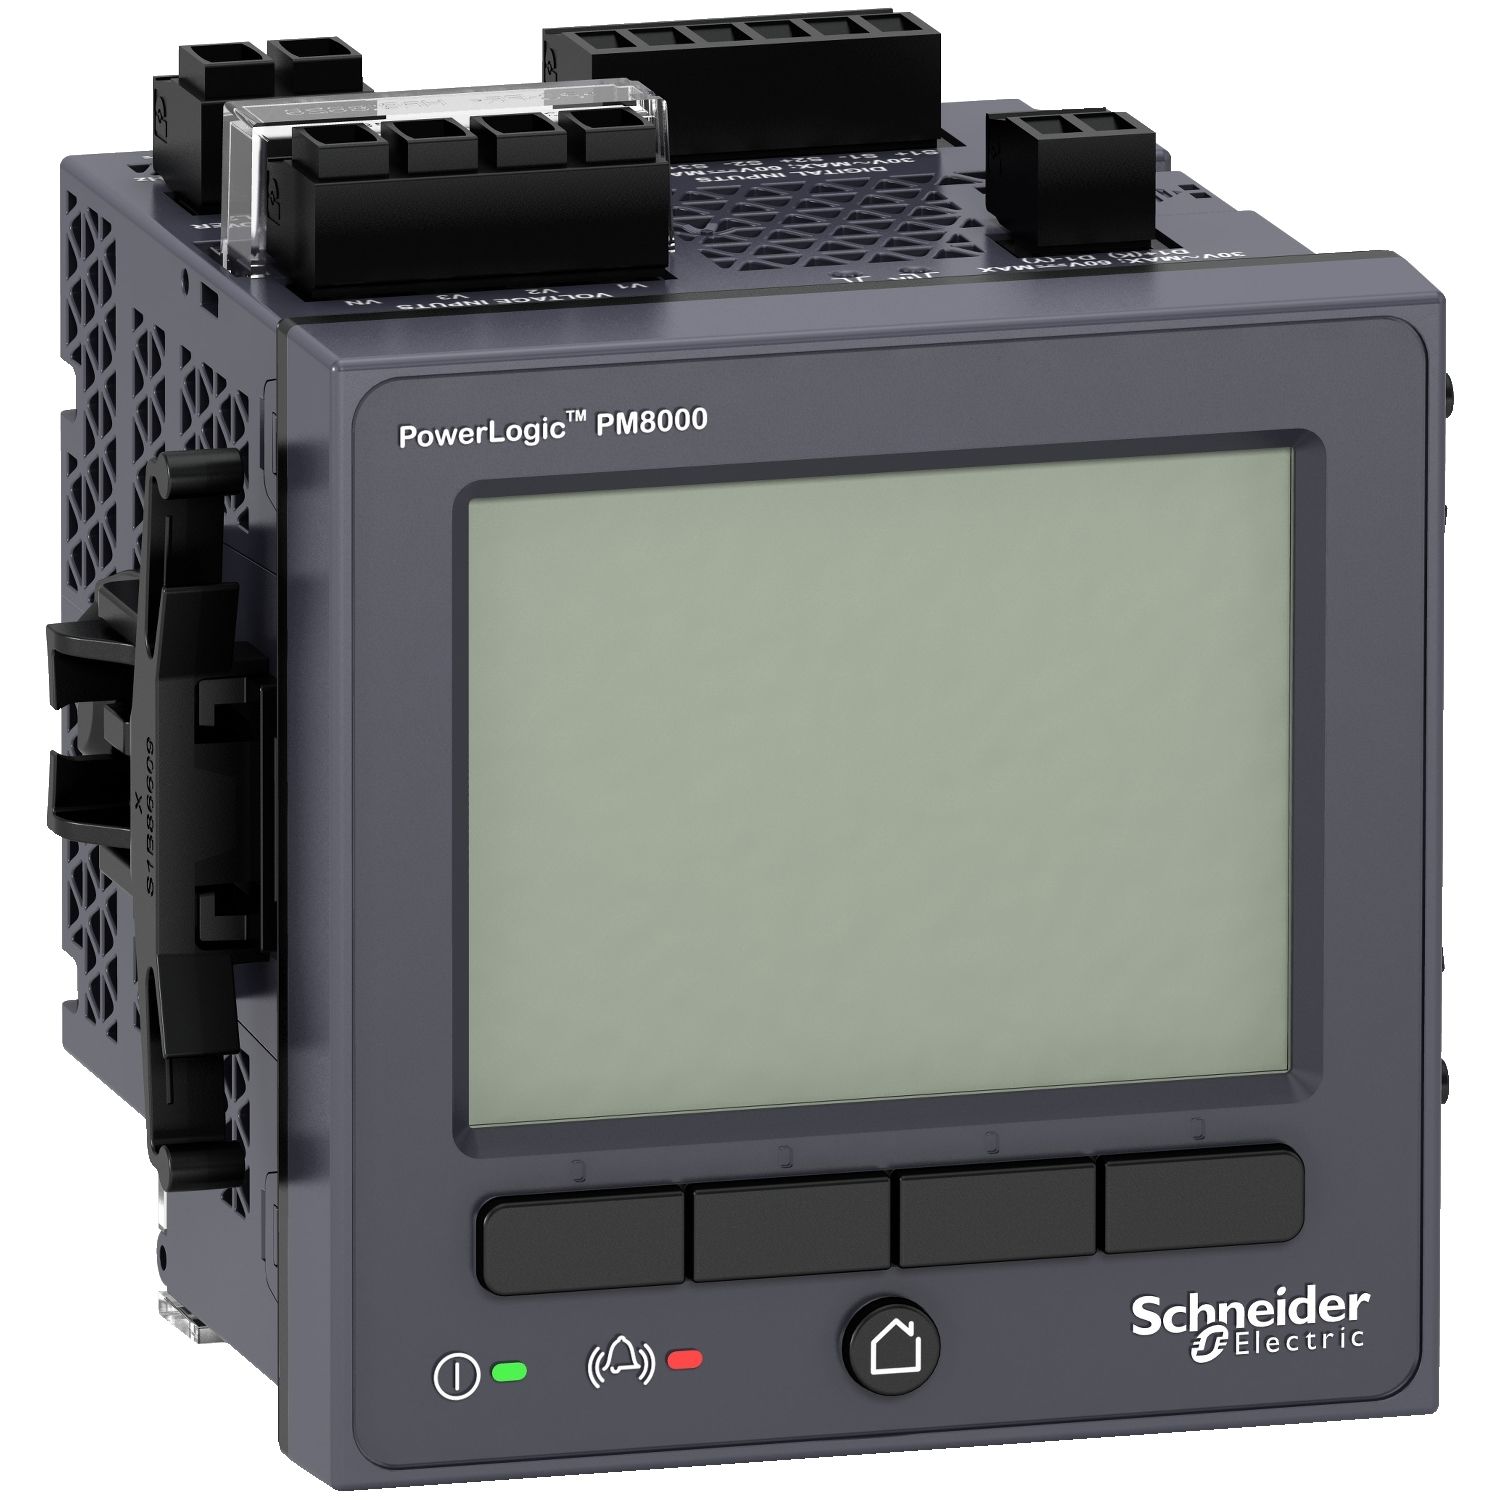 METSEPM8240 PowerLogic PM8000 - PM8240 Panel mount meter - intermediate metering